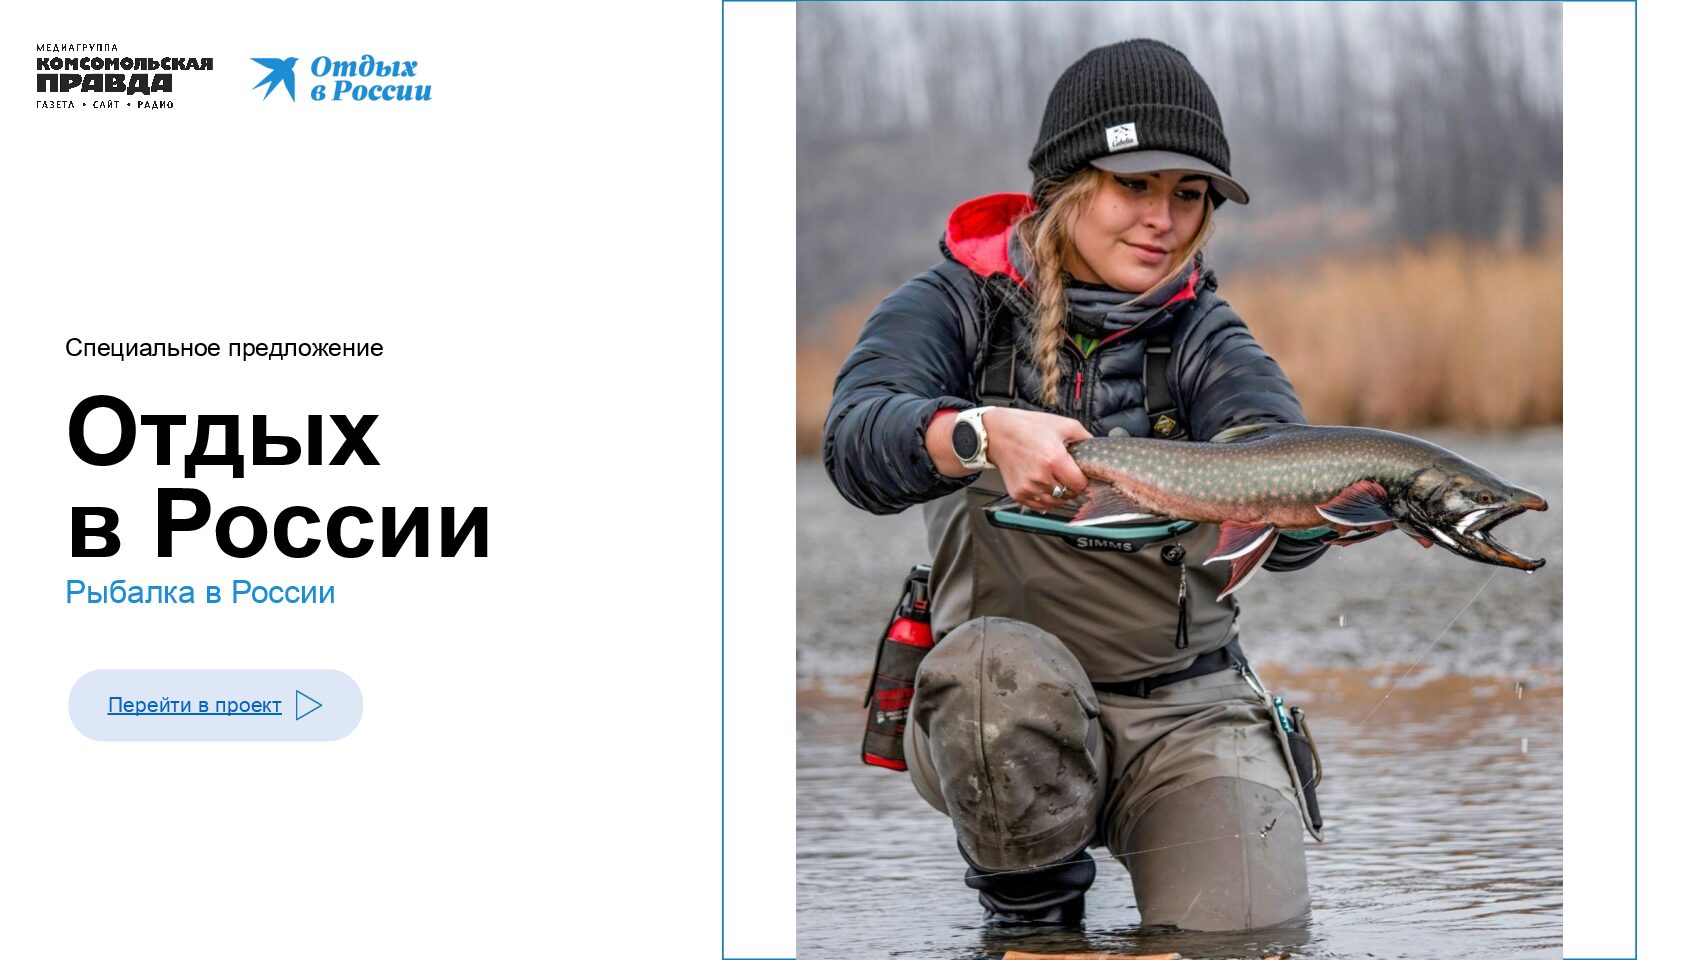 «Отдых в России» — Рыбалка